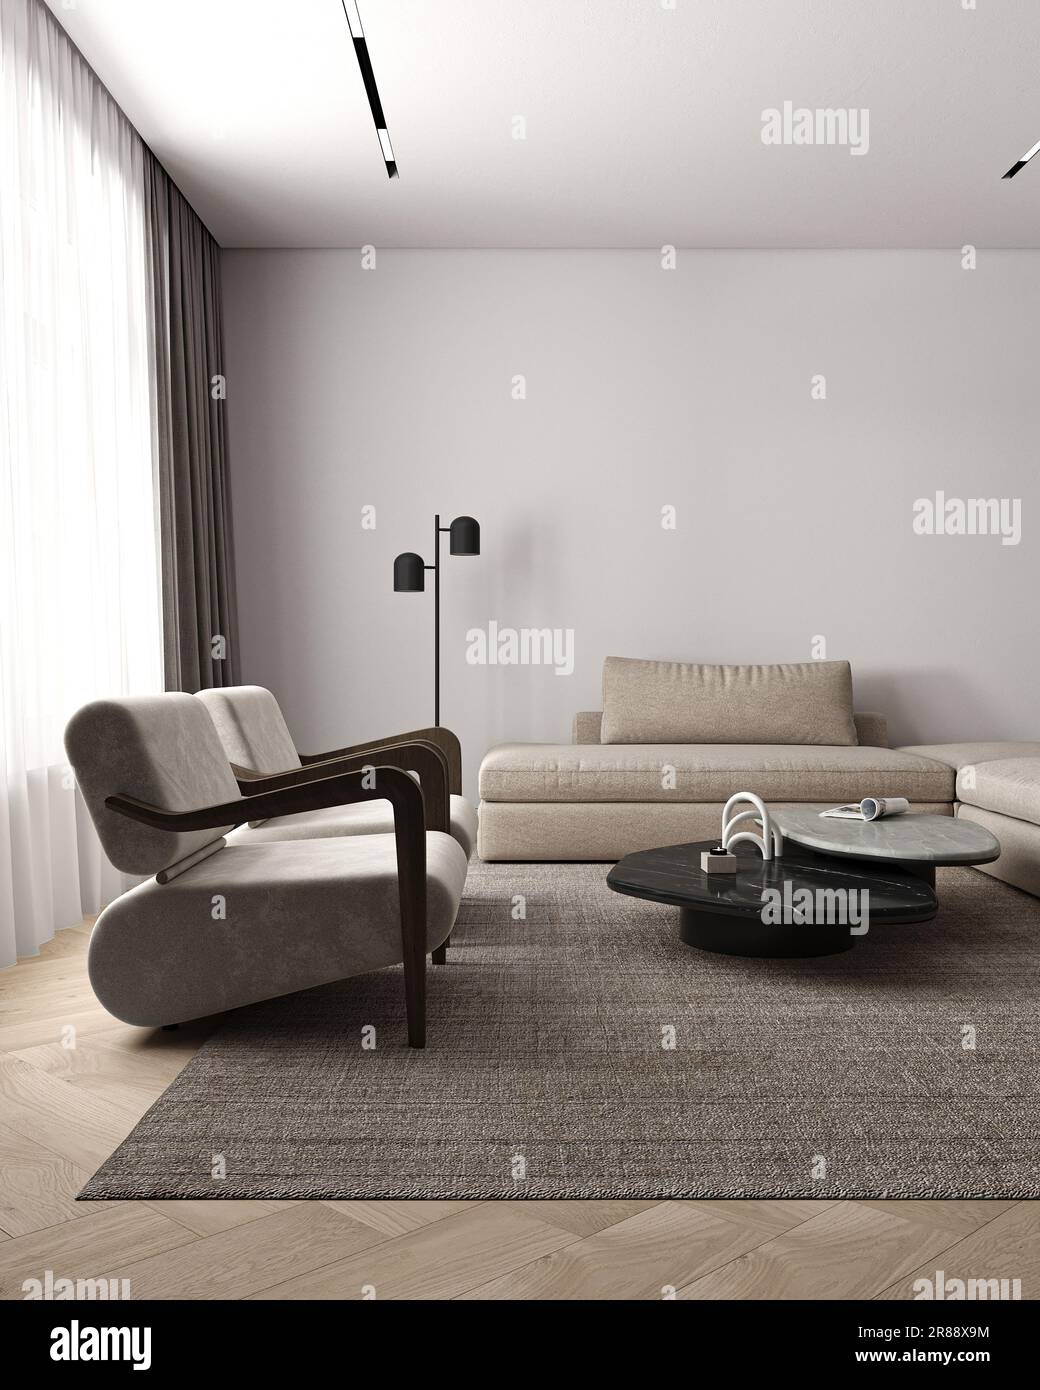 Salon intérieur minimaliste classique simple avec table en pierre, lampe, plafonnier et fauteuil. Maquette d'un mur vide. 3d rendu. Haute qualité 3D Banque D'Images